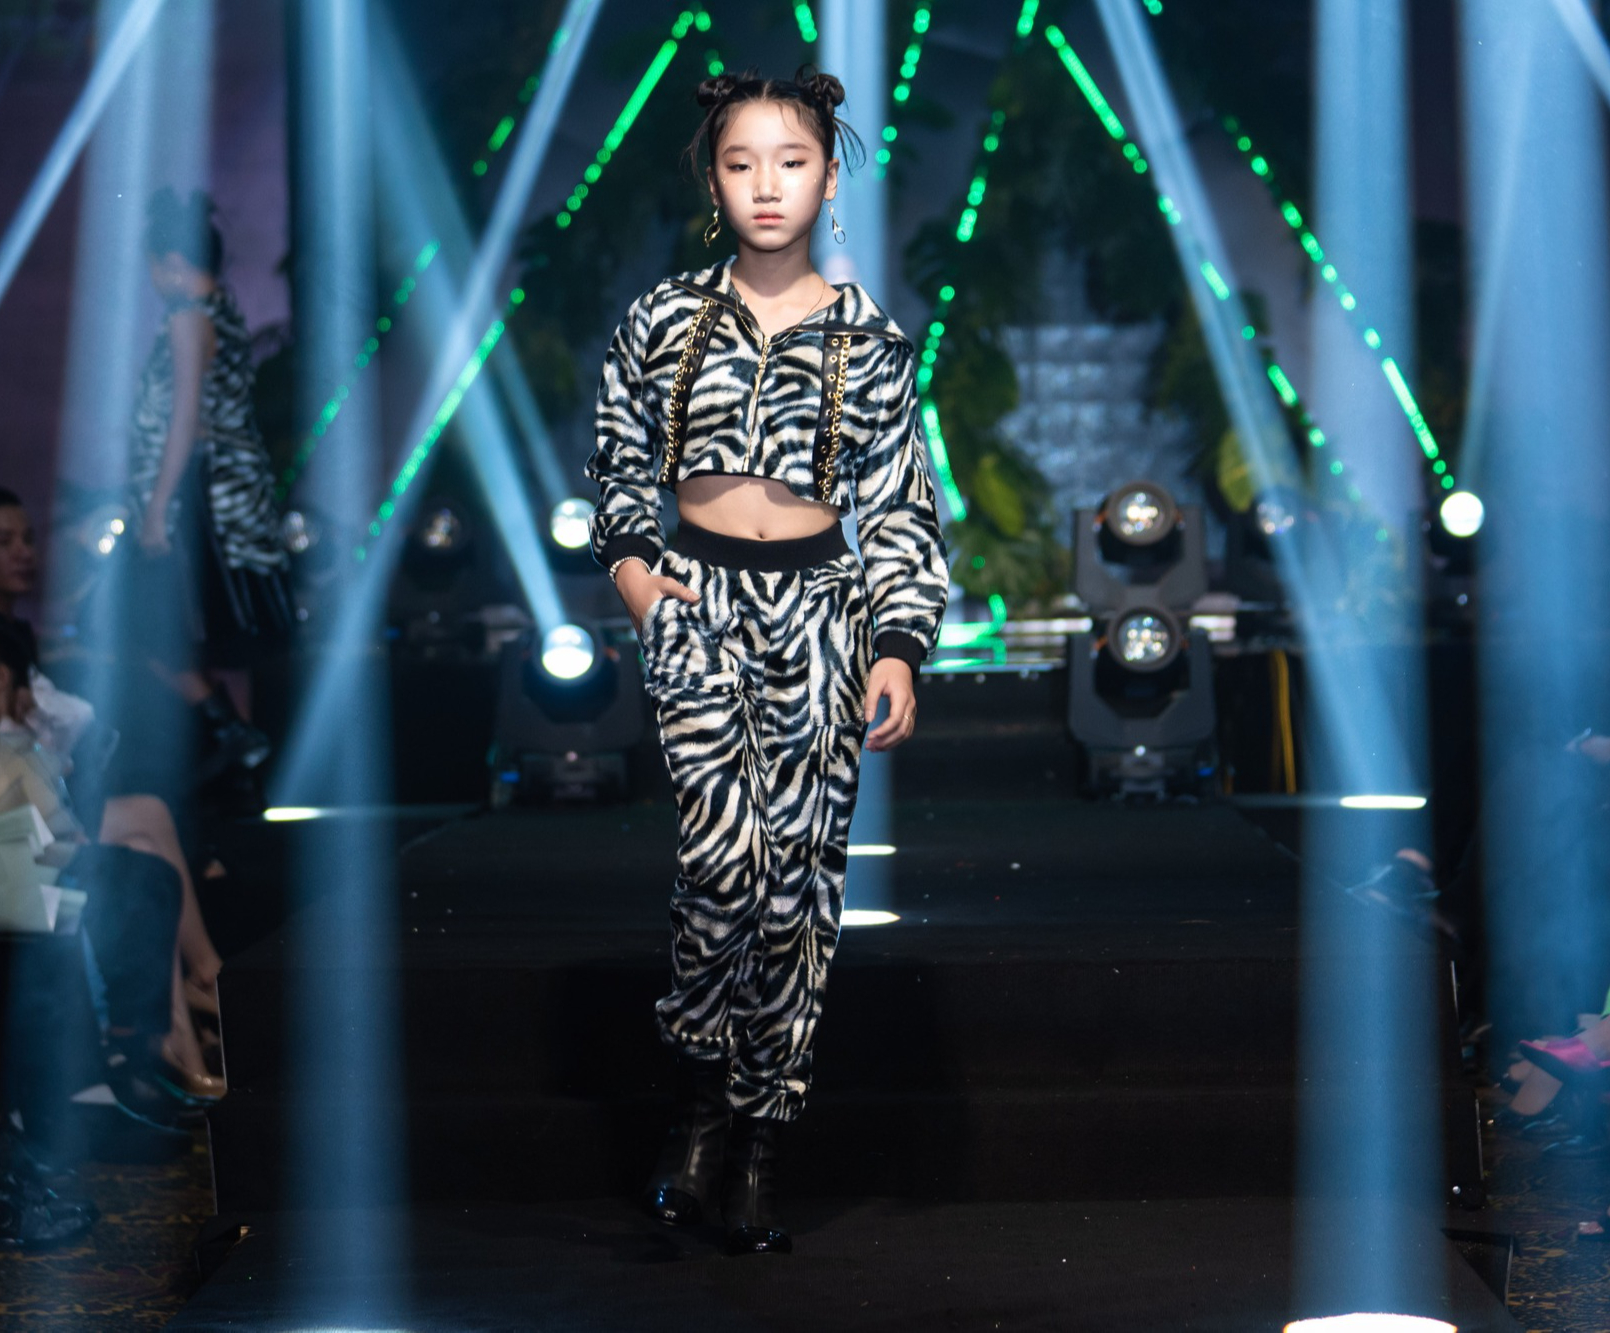 Quang Hà, Ngọc Anh sải catwalk ấn tượng cùng 100 mẫu nhí trong đêm thời trang của Trần Thanh Mẫn - Ảnh 7.